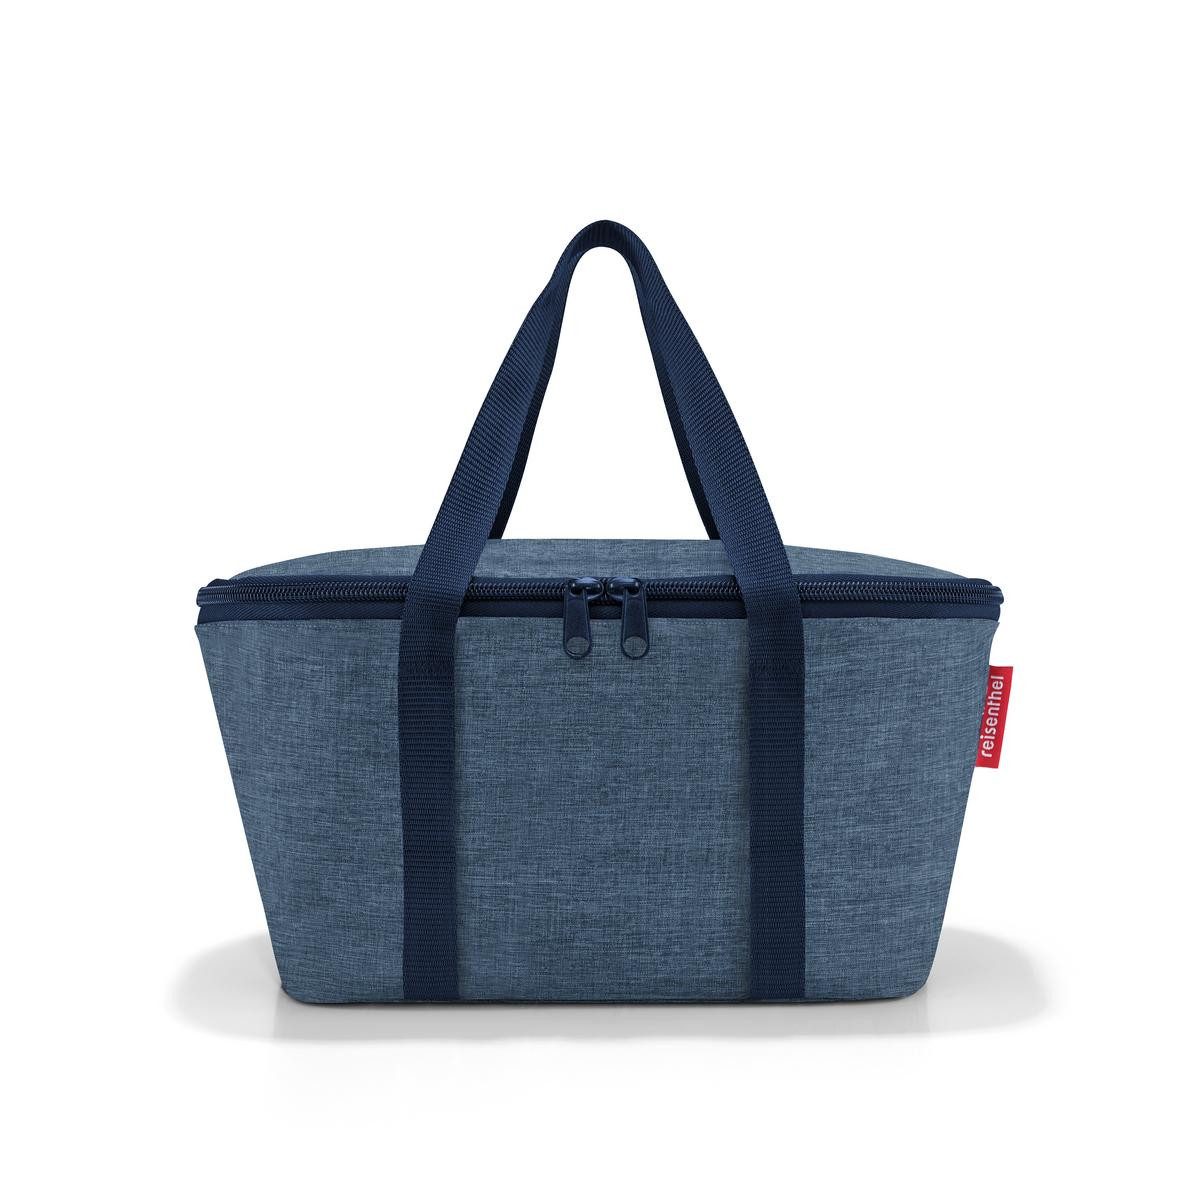 REISENTHEL® Einkaufsshopper coolerbag XS twist blue